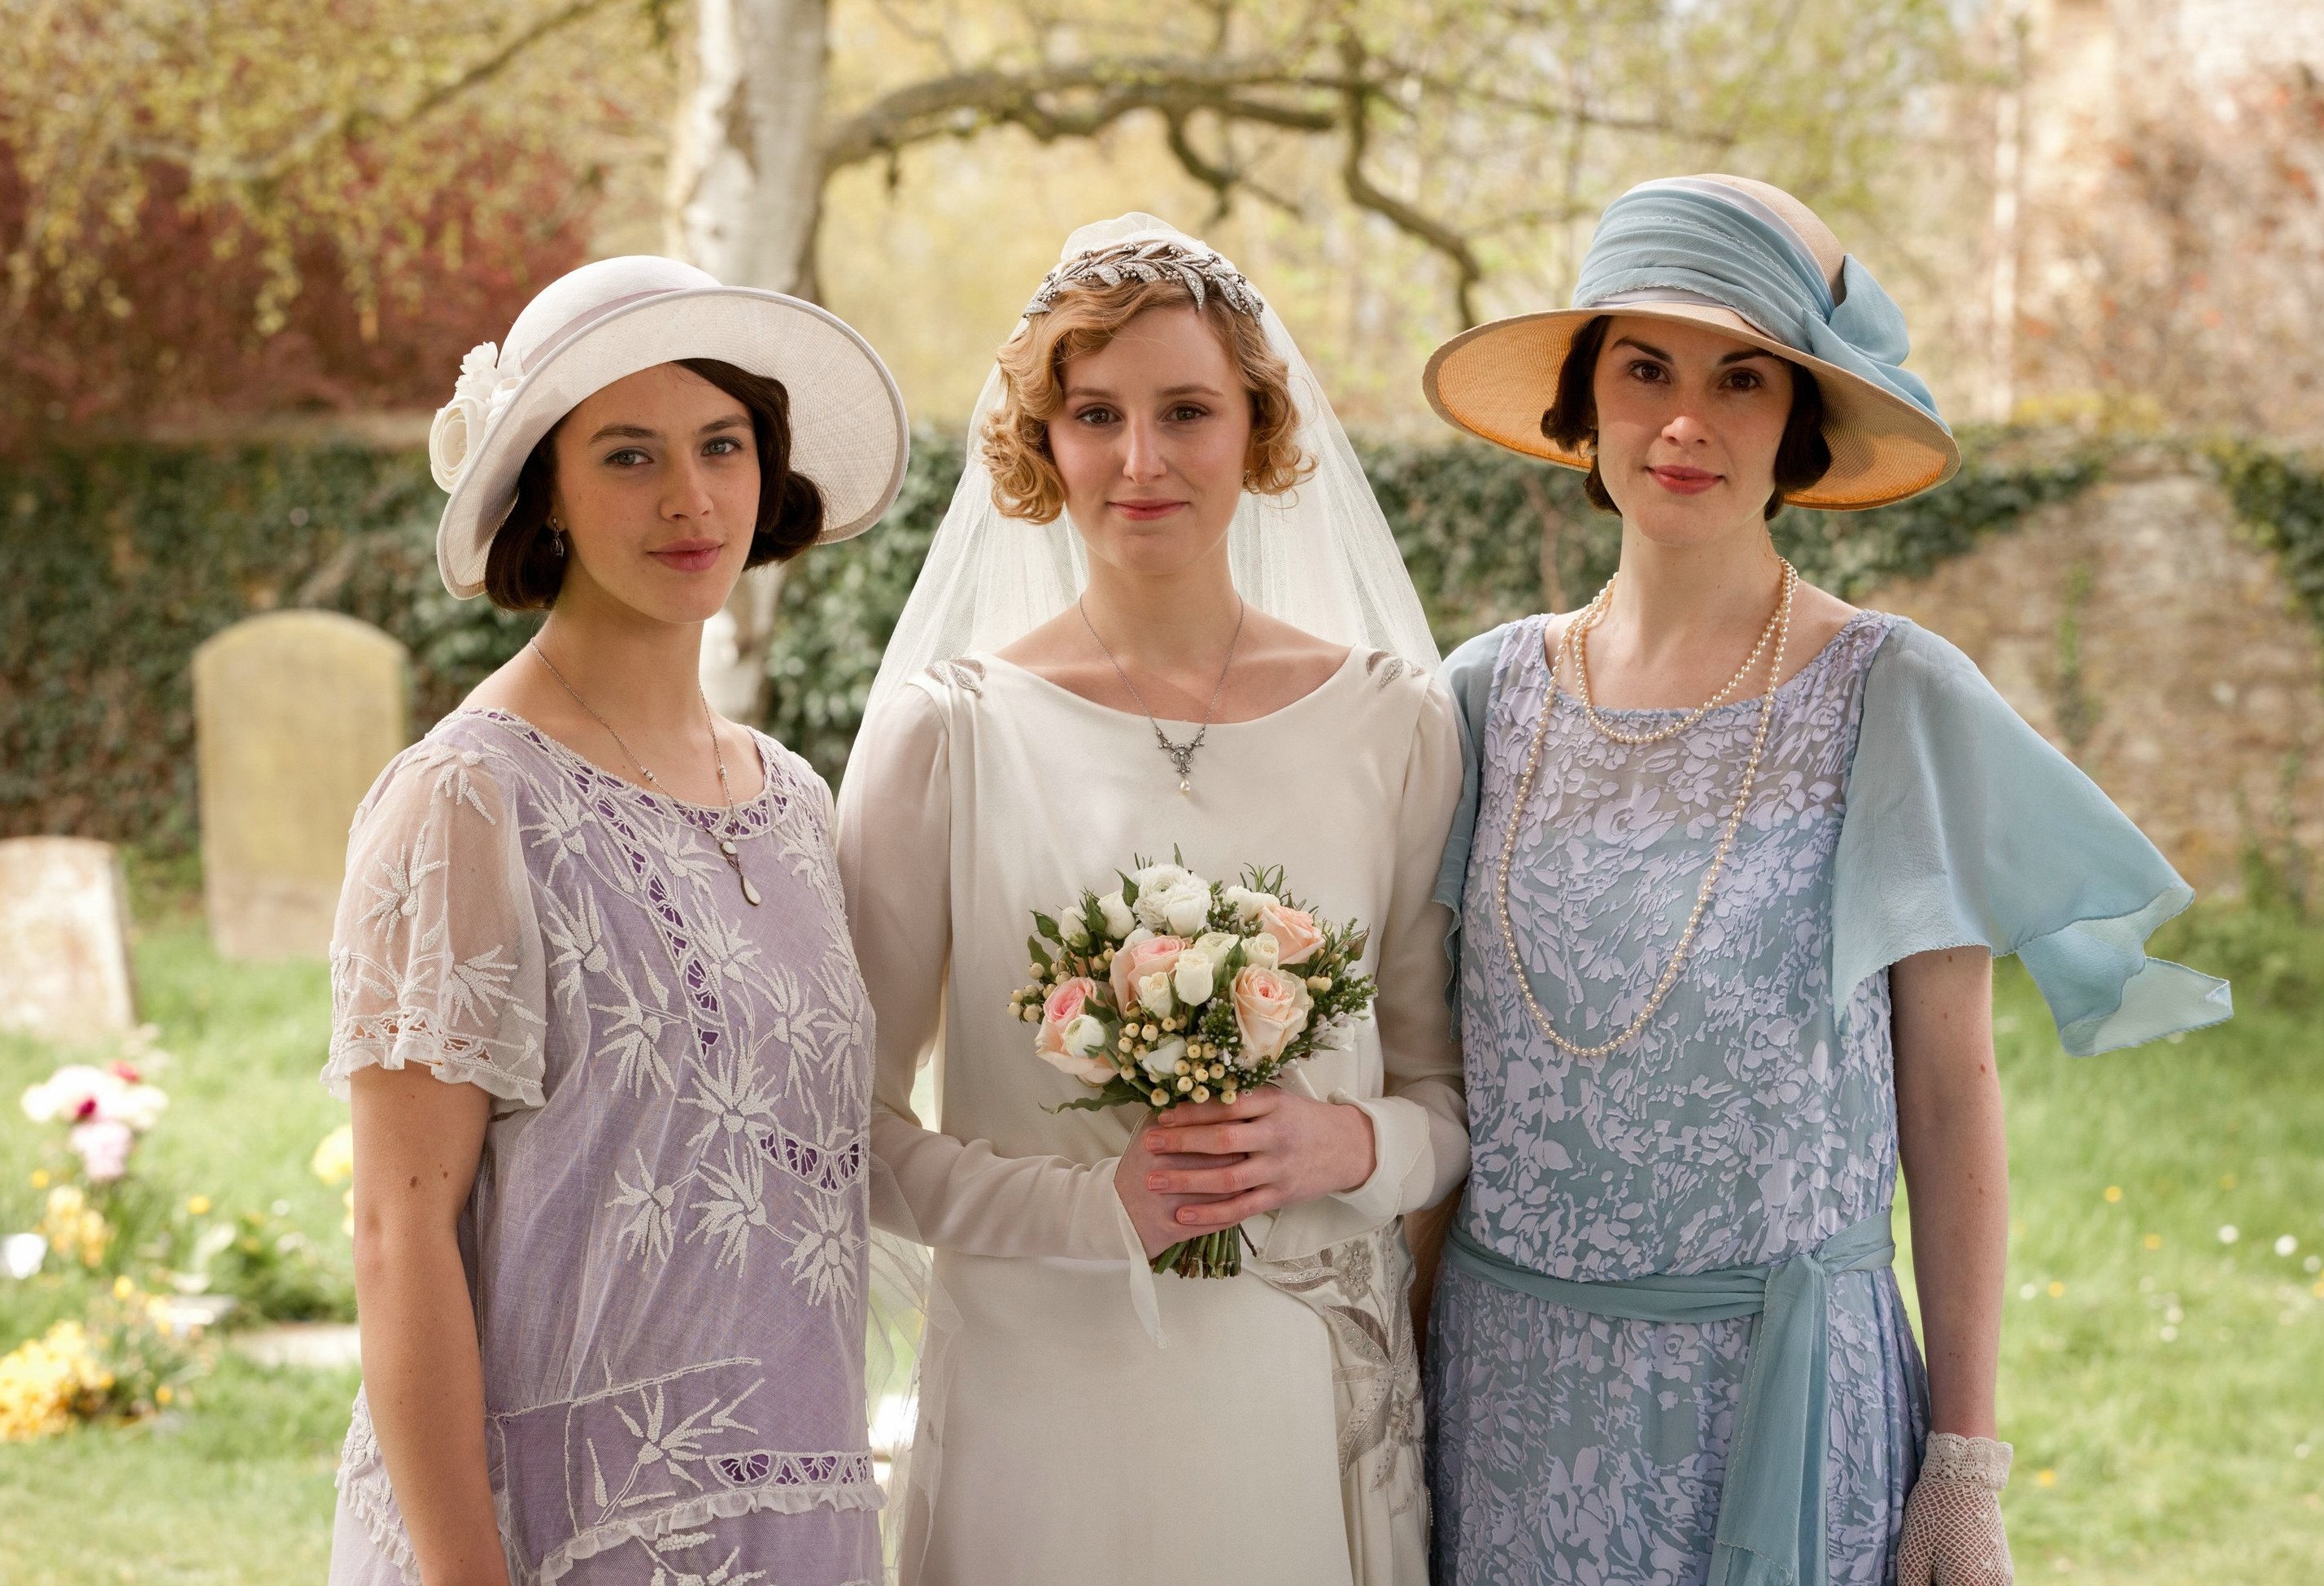 Downton Abbey's Lady Edith's Wedding